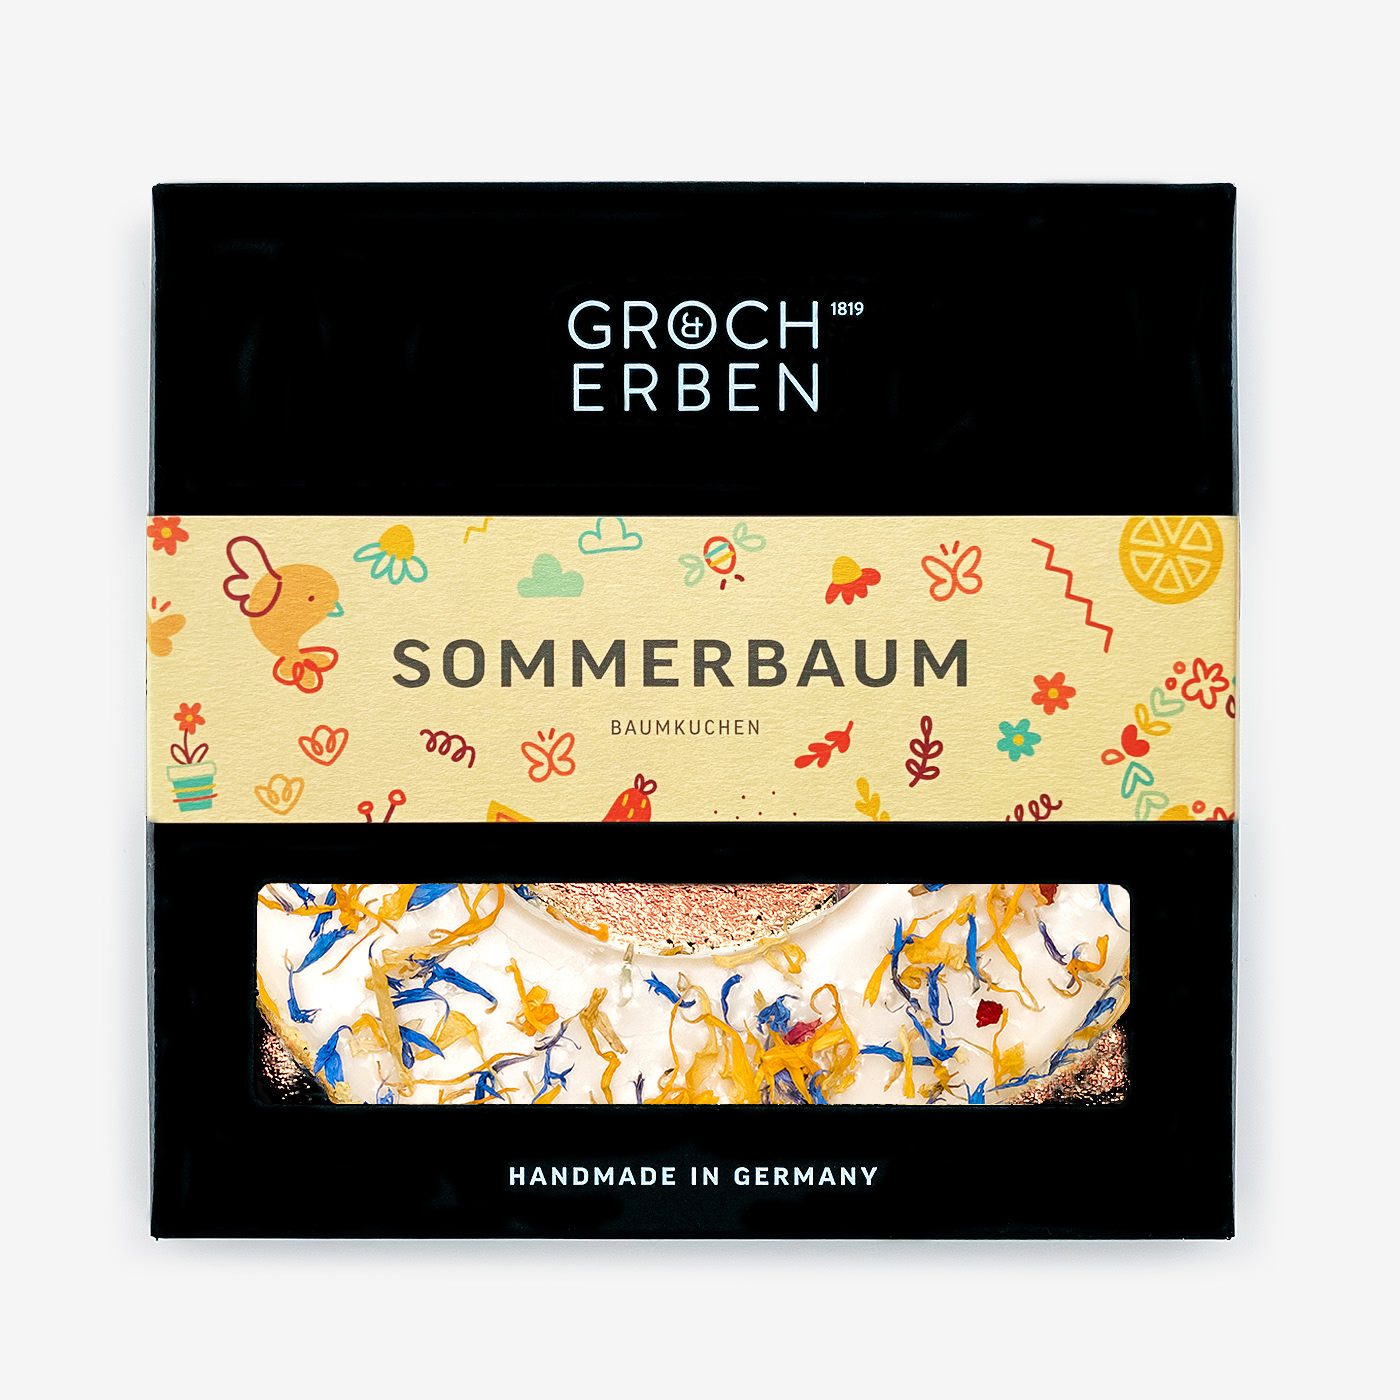 Sommerbaum Baumkuchen with delicious edible flowers | GROCH & ERBEN